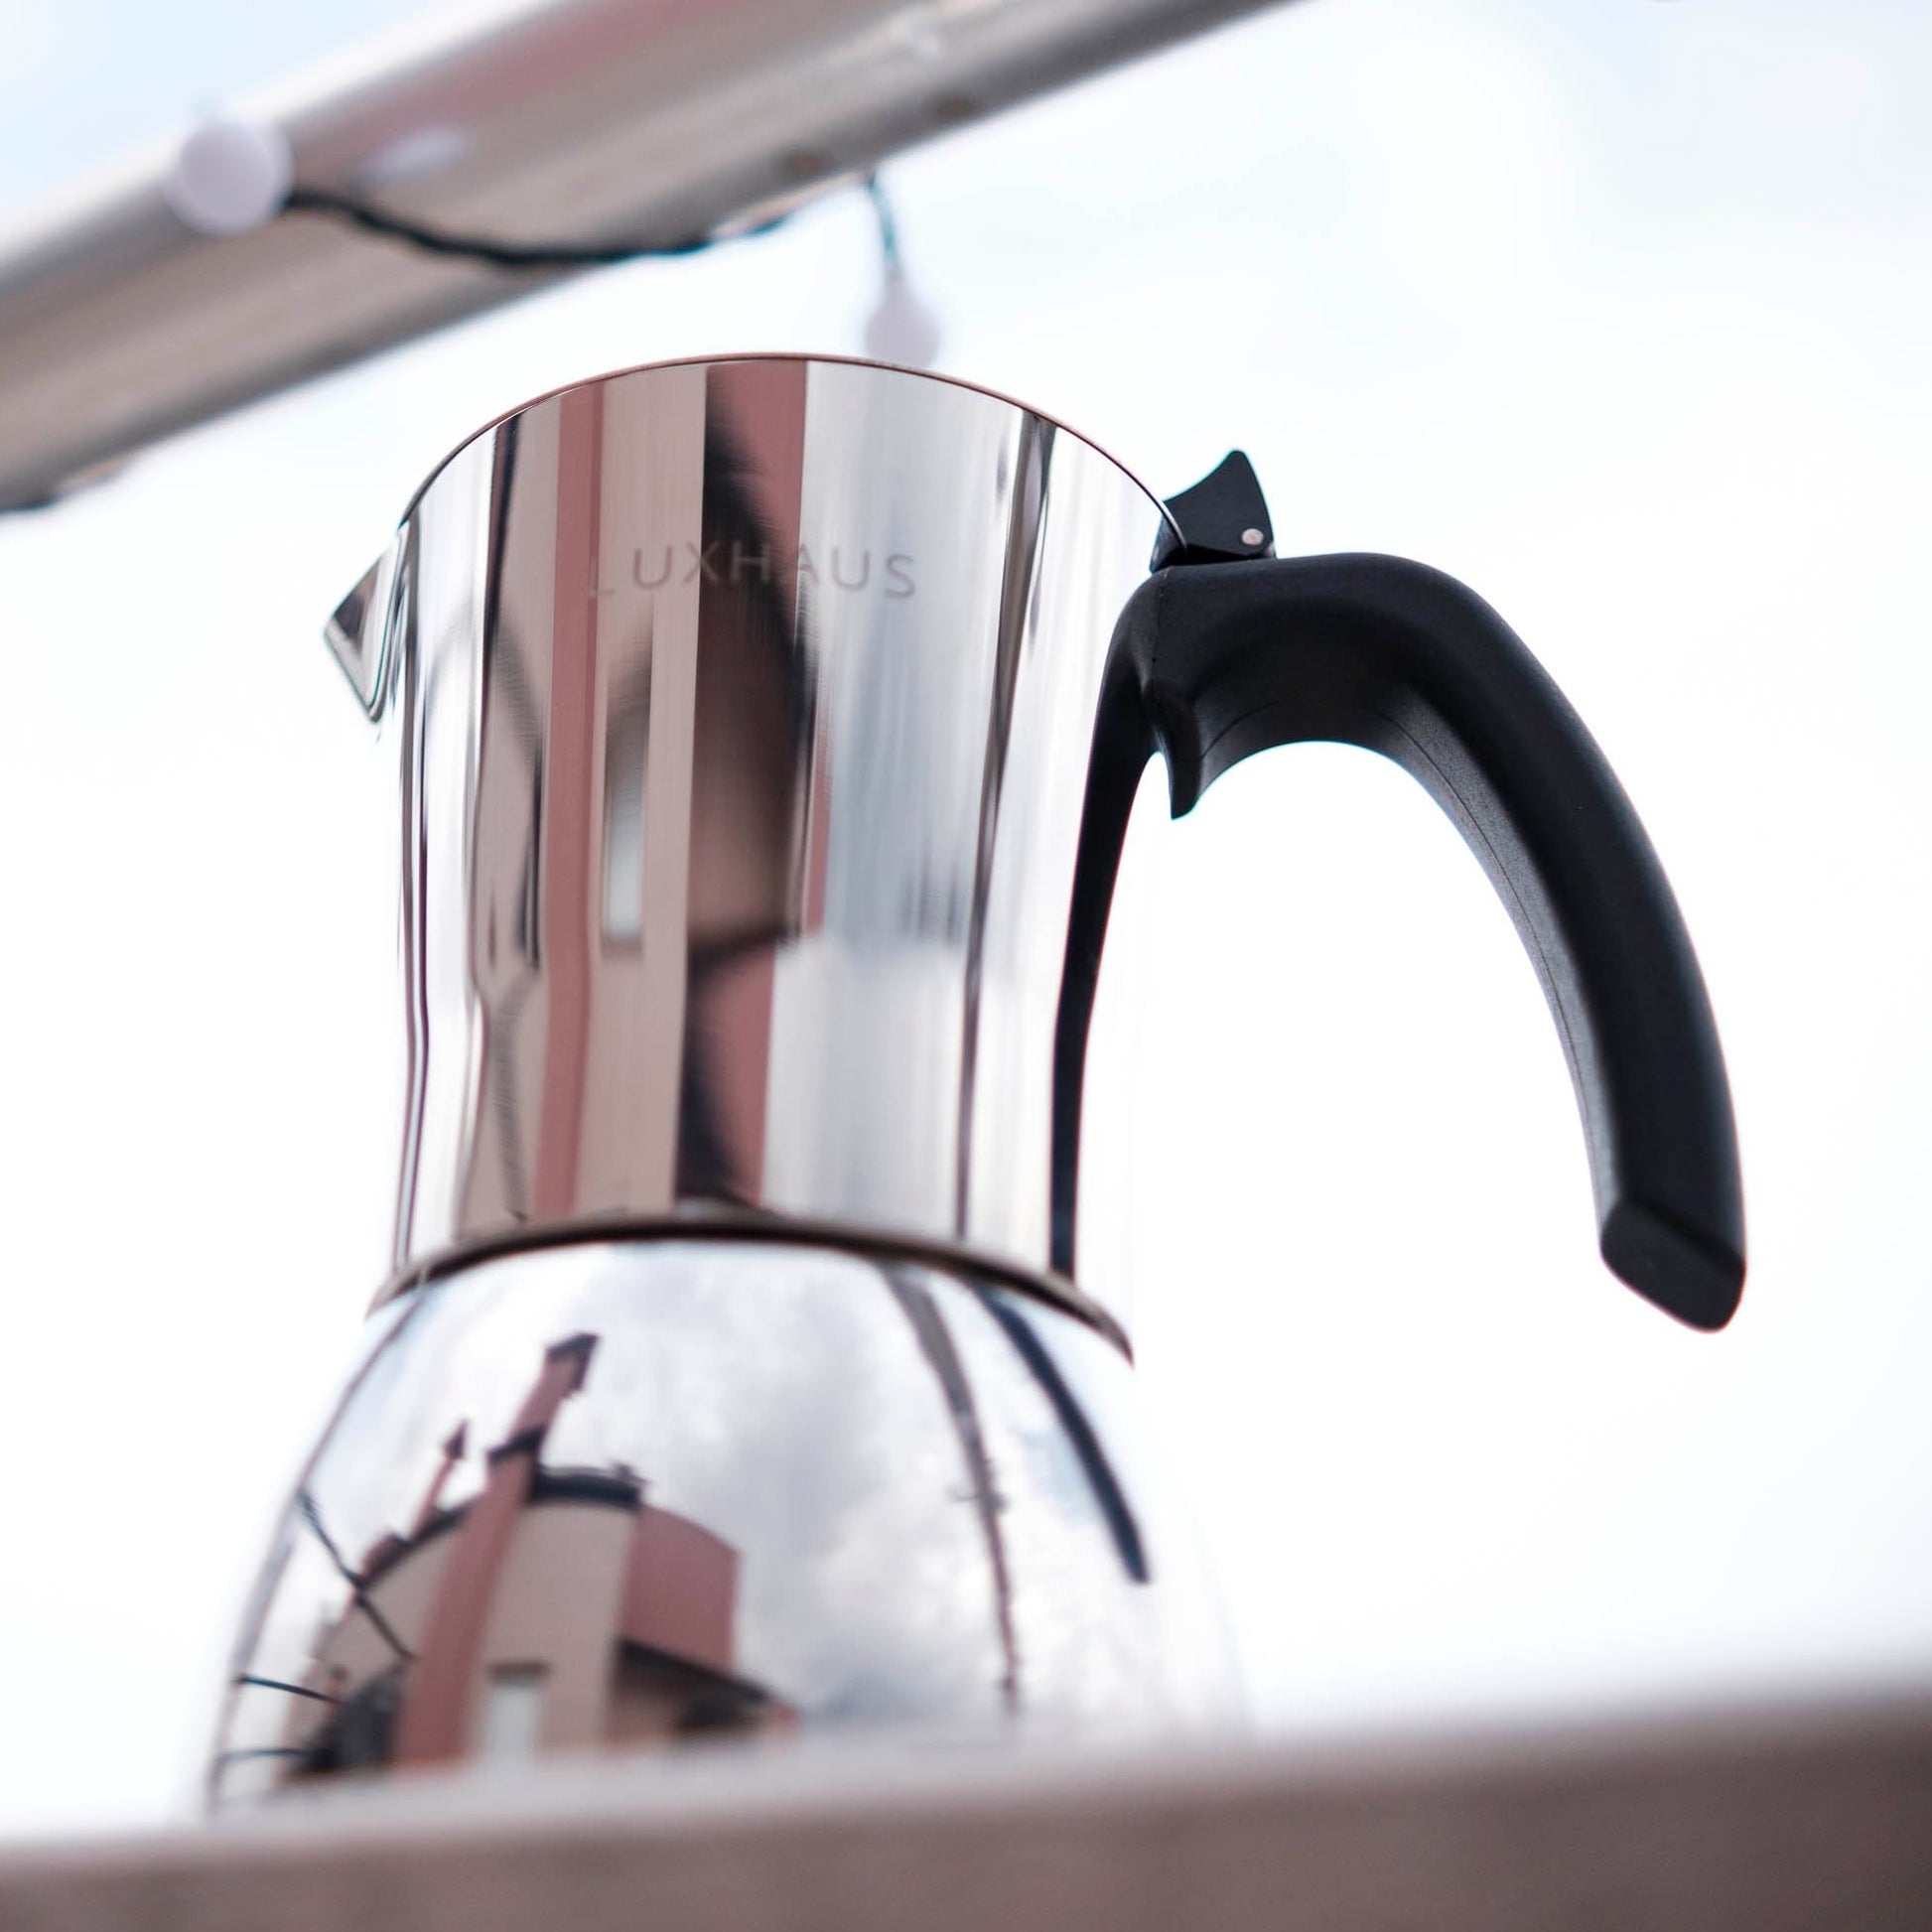 The Luxhaus Moka Pot Review: Sleek & Elegant Stove-Top Coffee